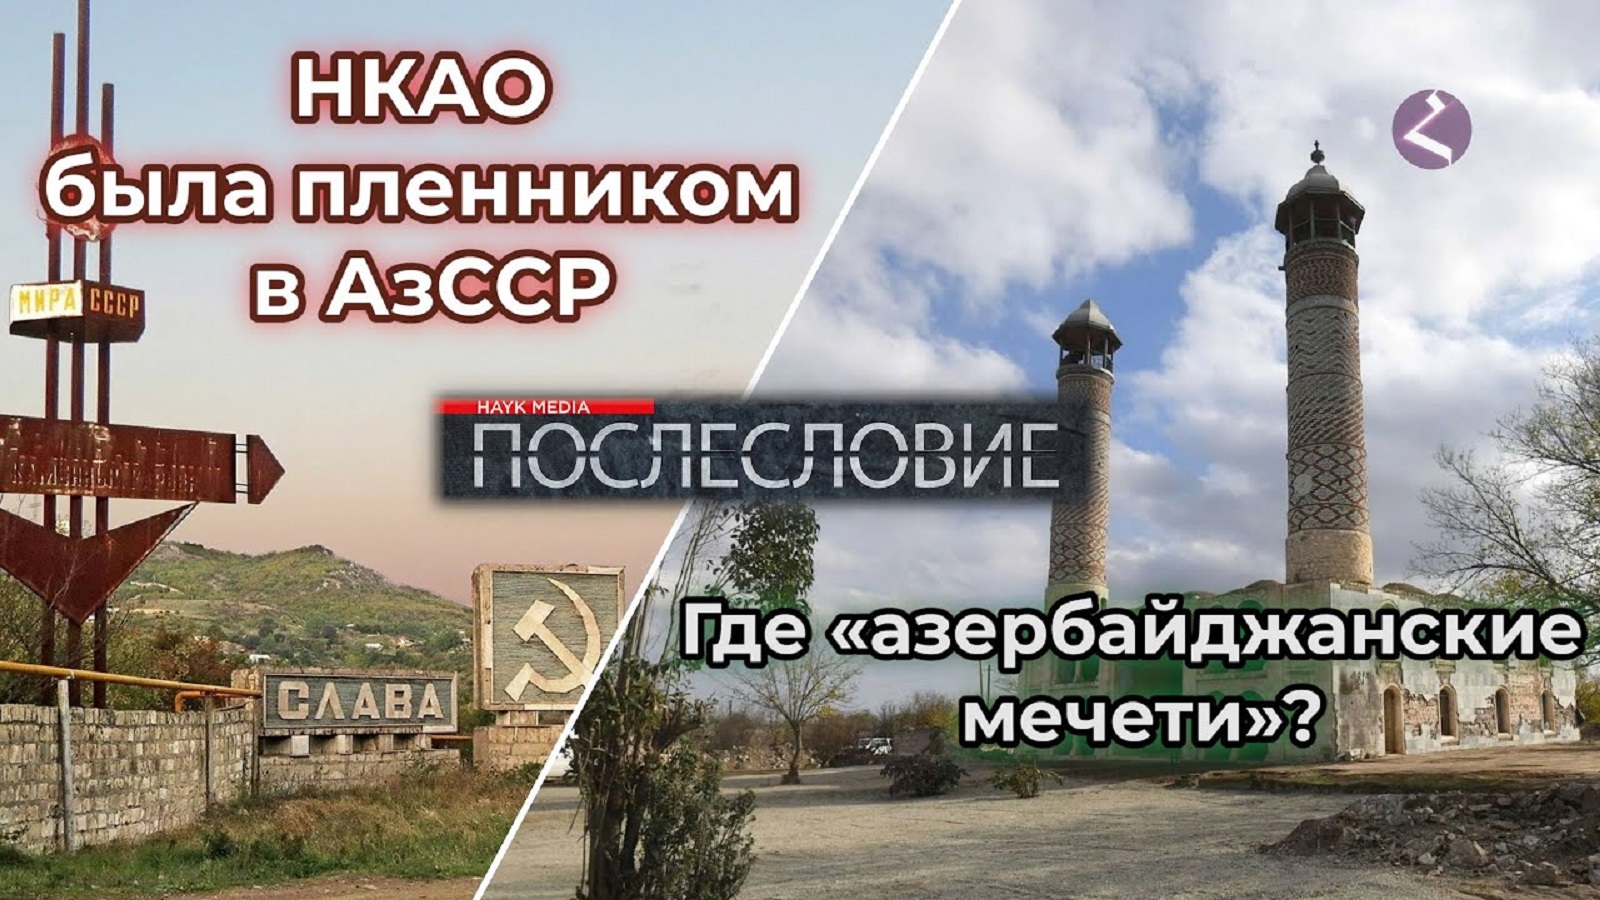 НКАО была пленником АзССР/ Где «азербайджанские» мечети?/Факты от HAYK media/